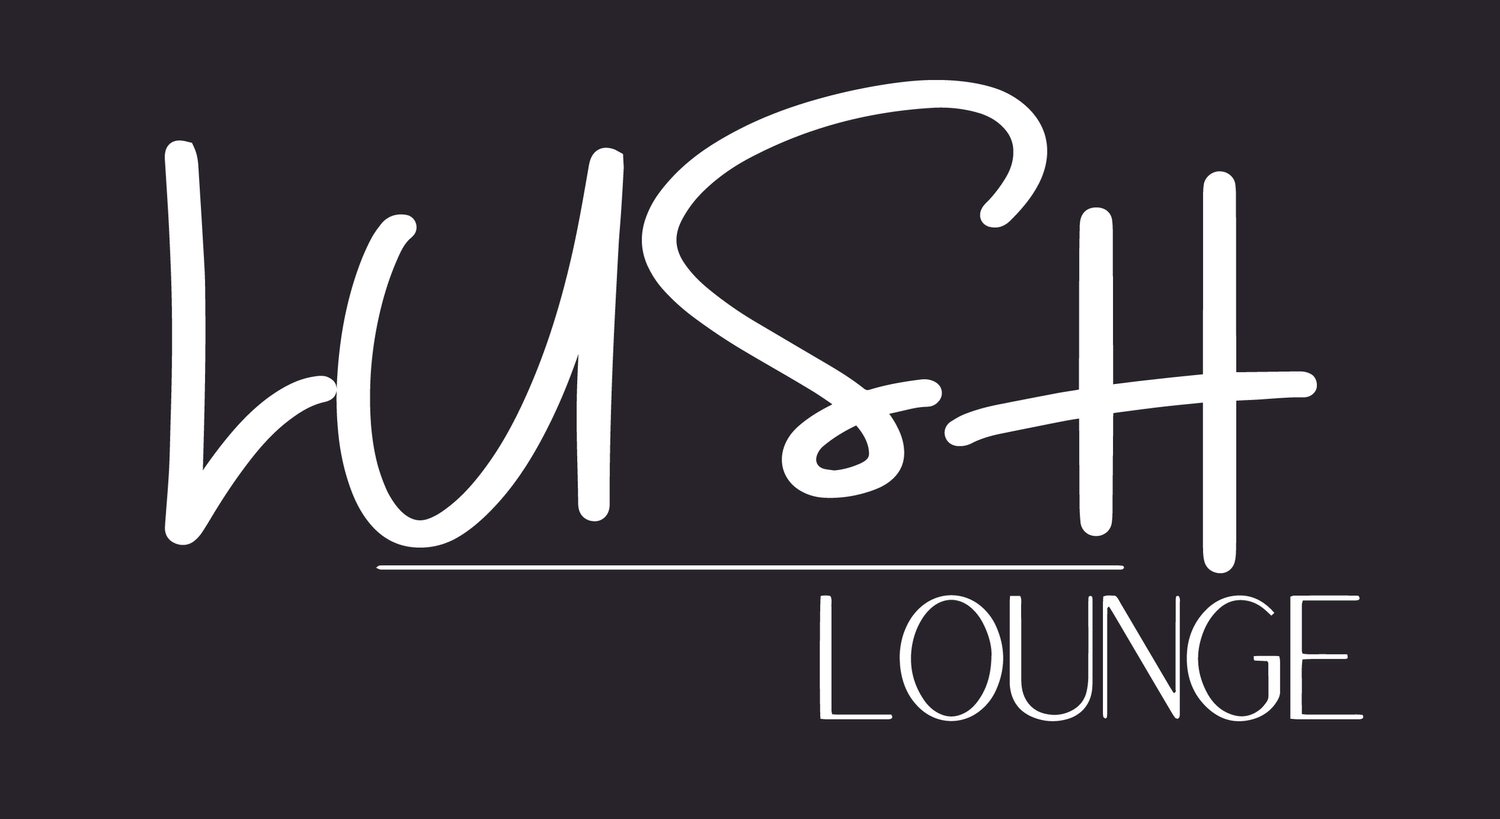 Lush Lounge Stuart